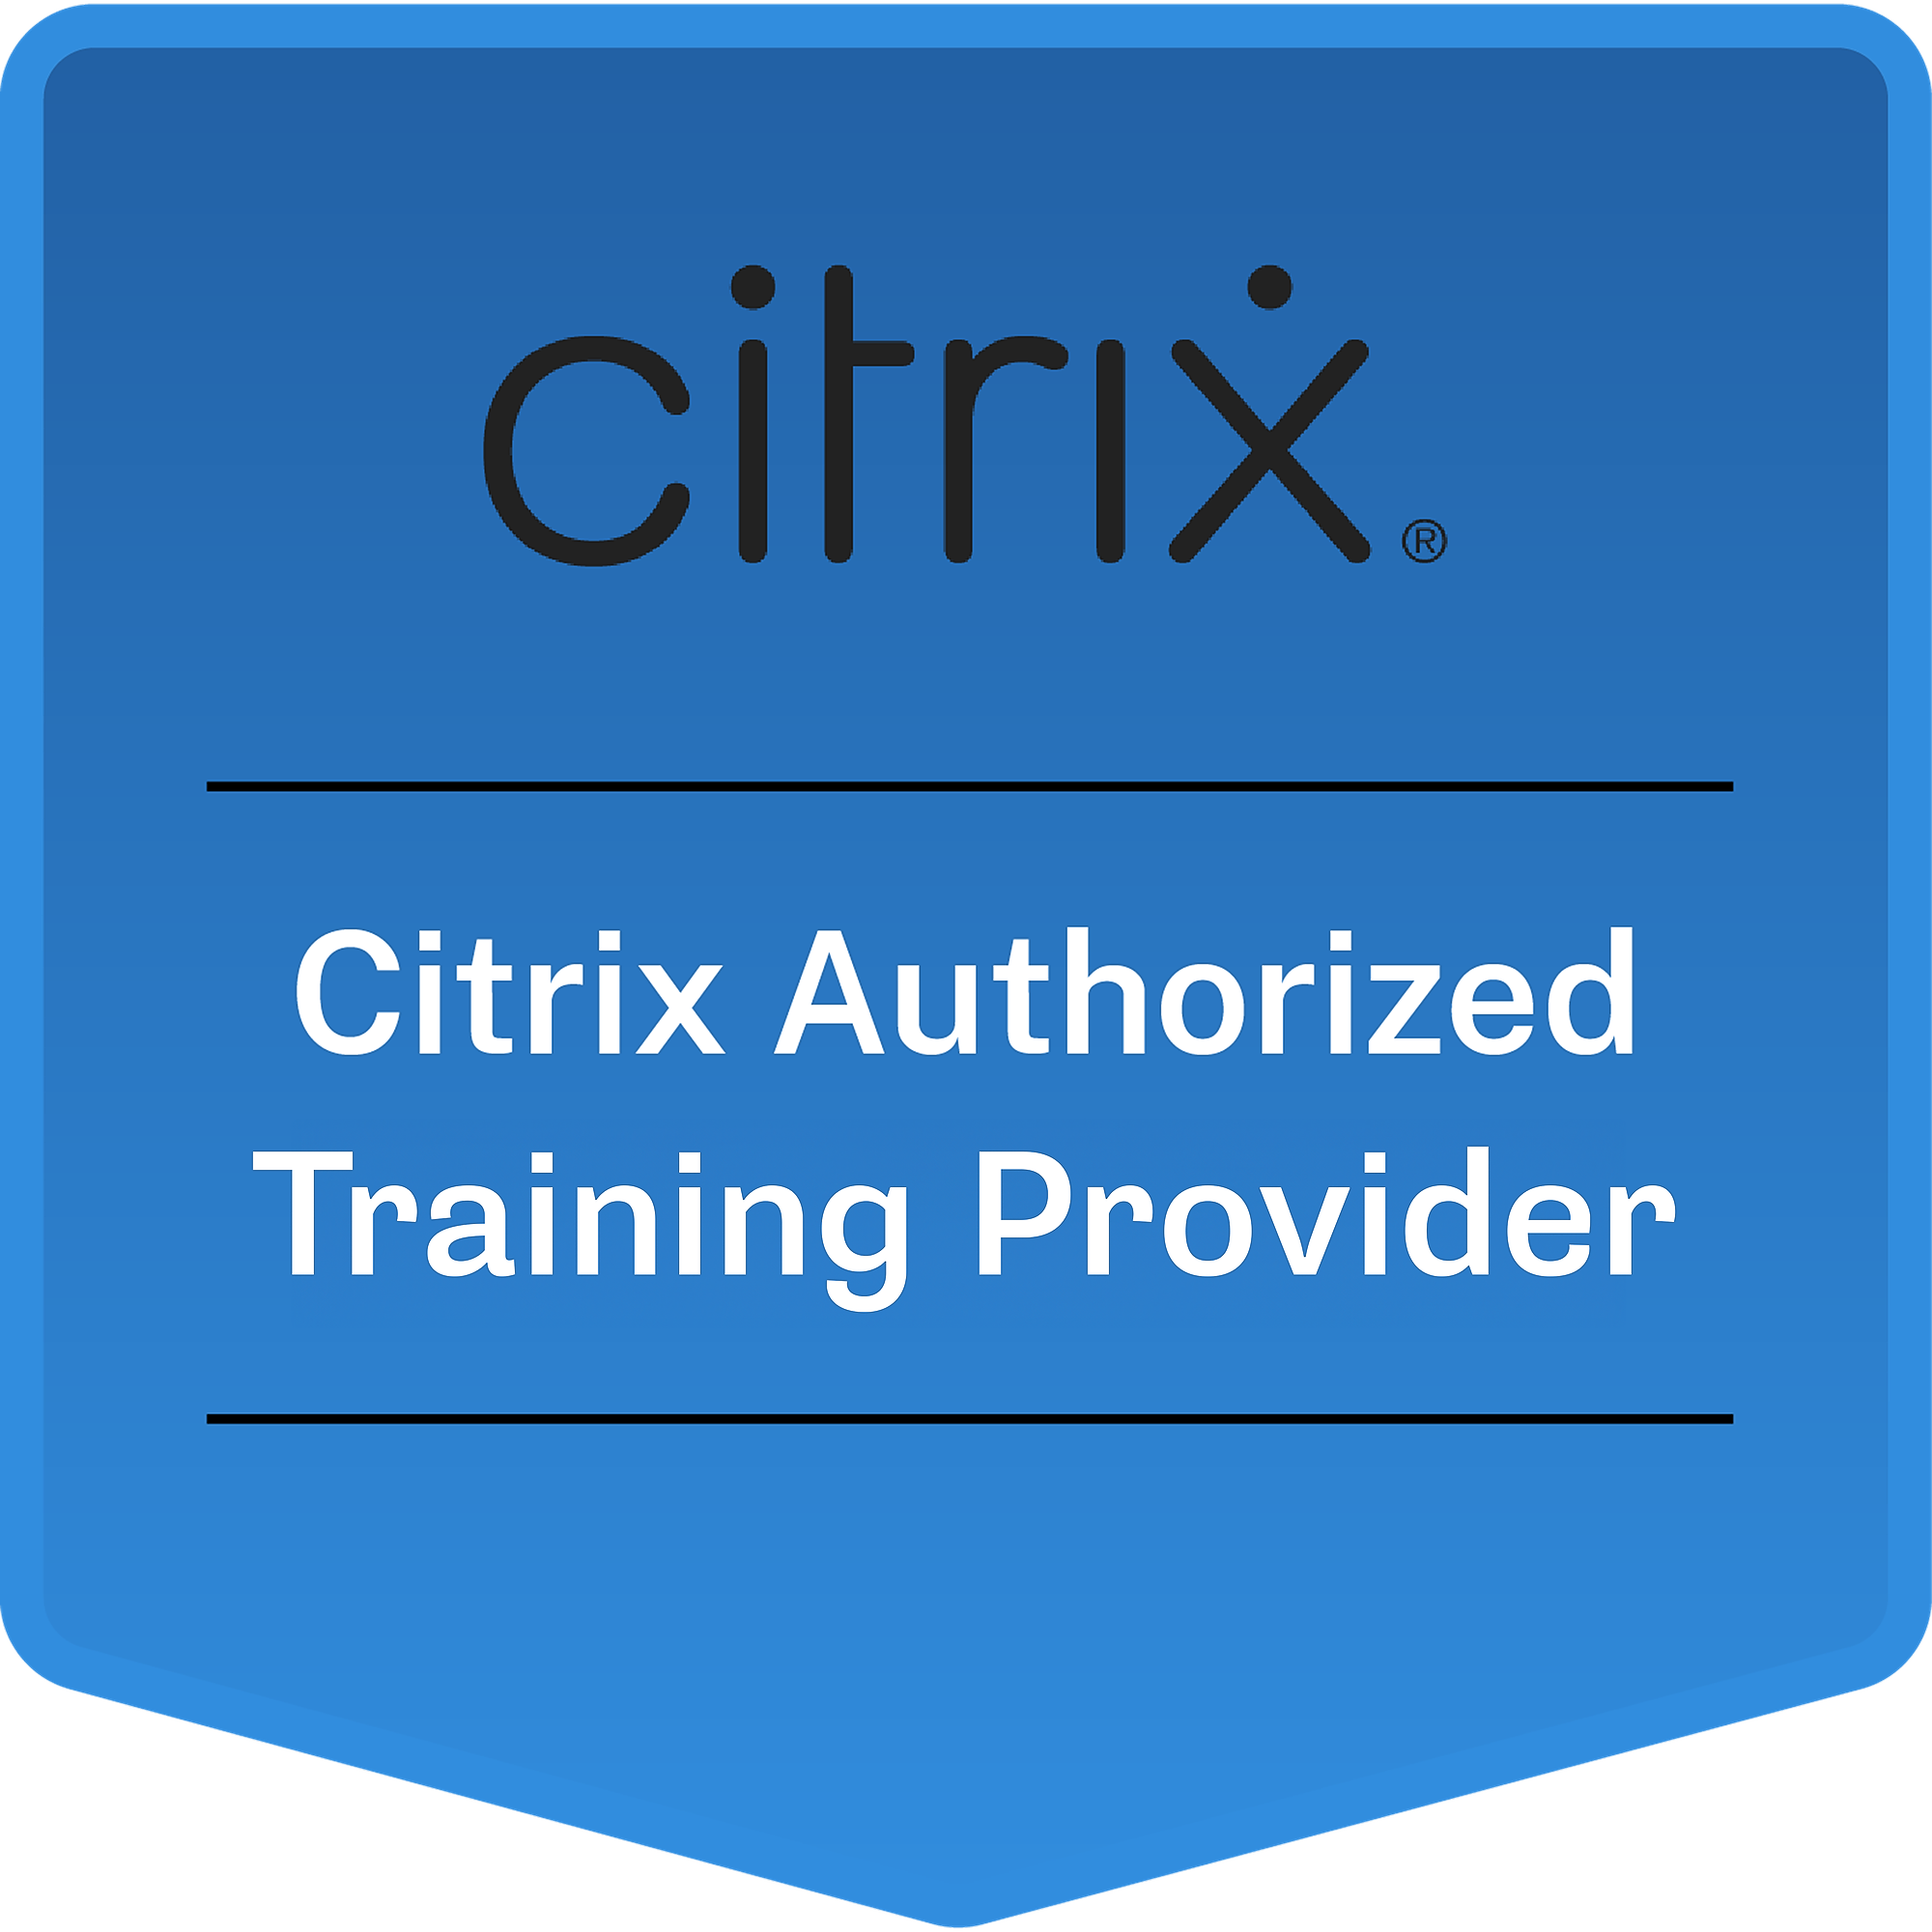 Citrix Authorized Training Provider